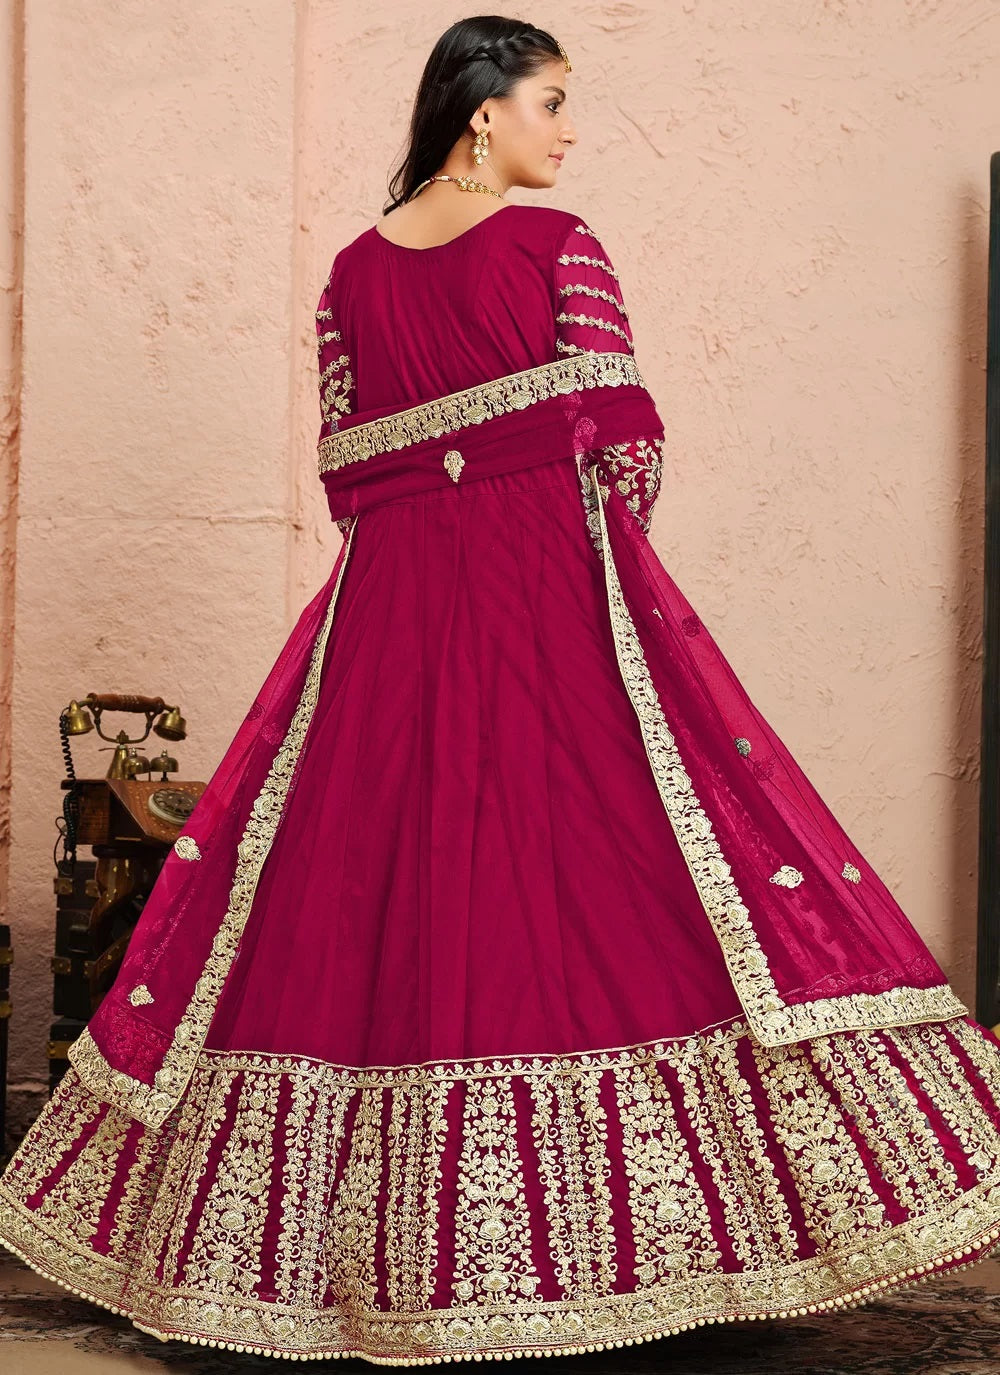 Bella Fancy Dresses Anarkali Dress Magenta Floor Length Wedding Look Suit